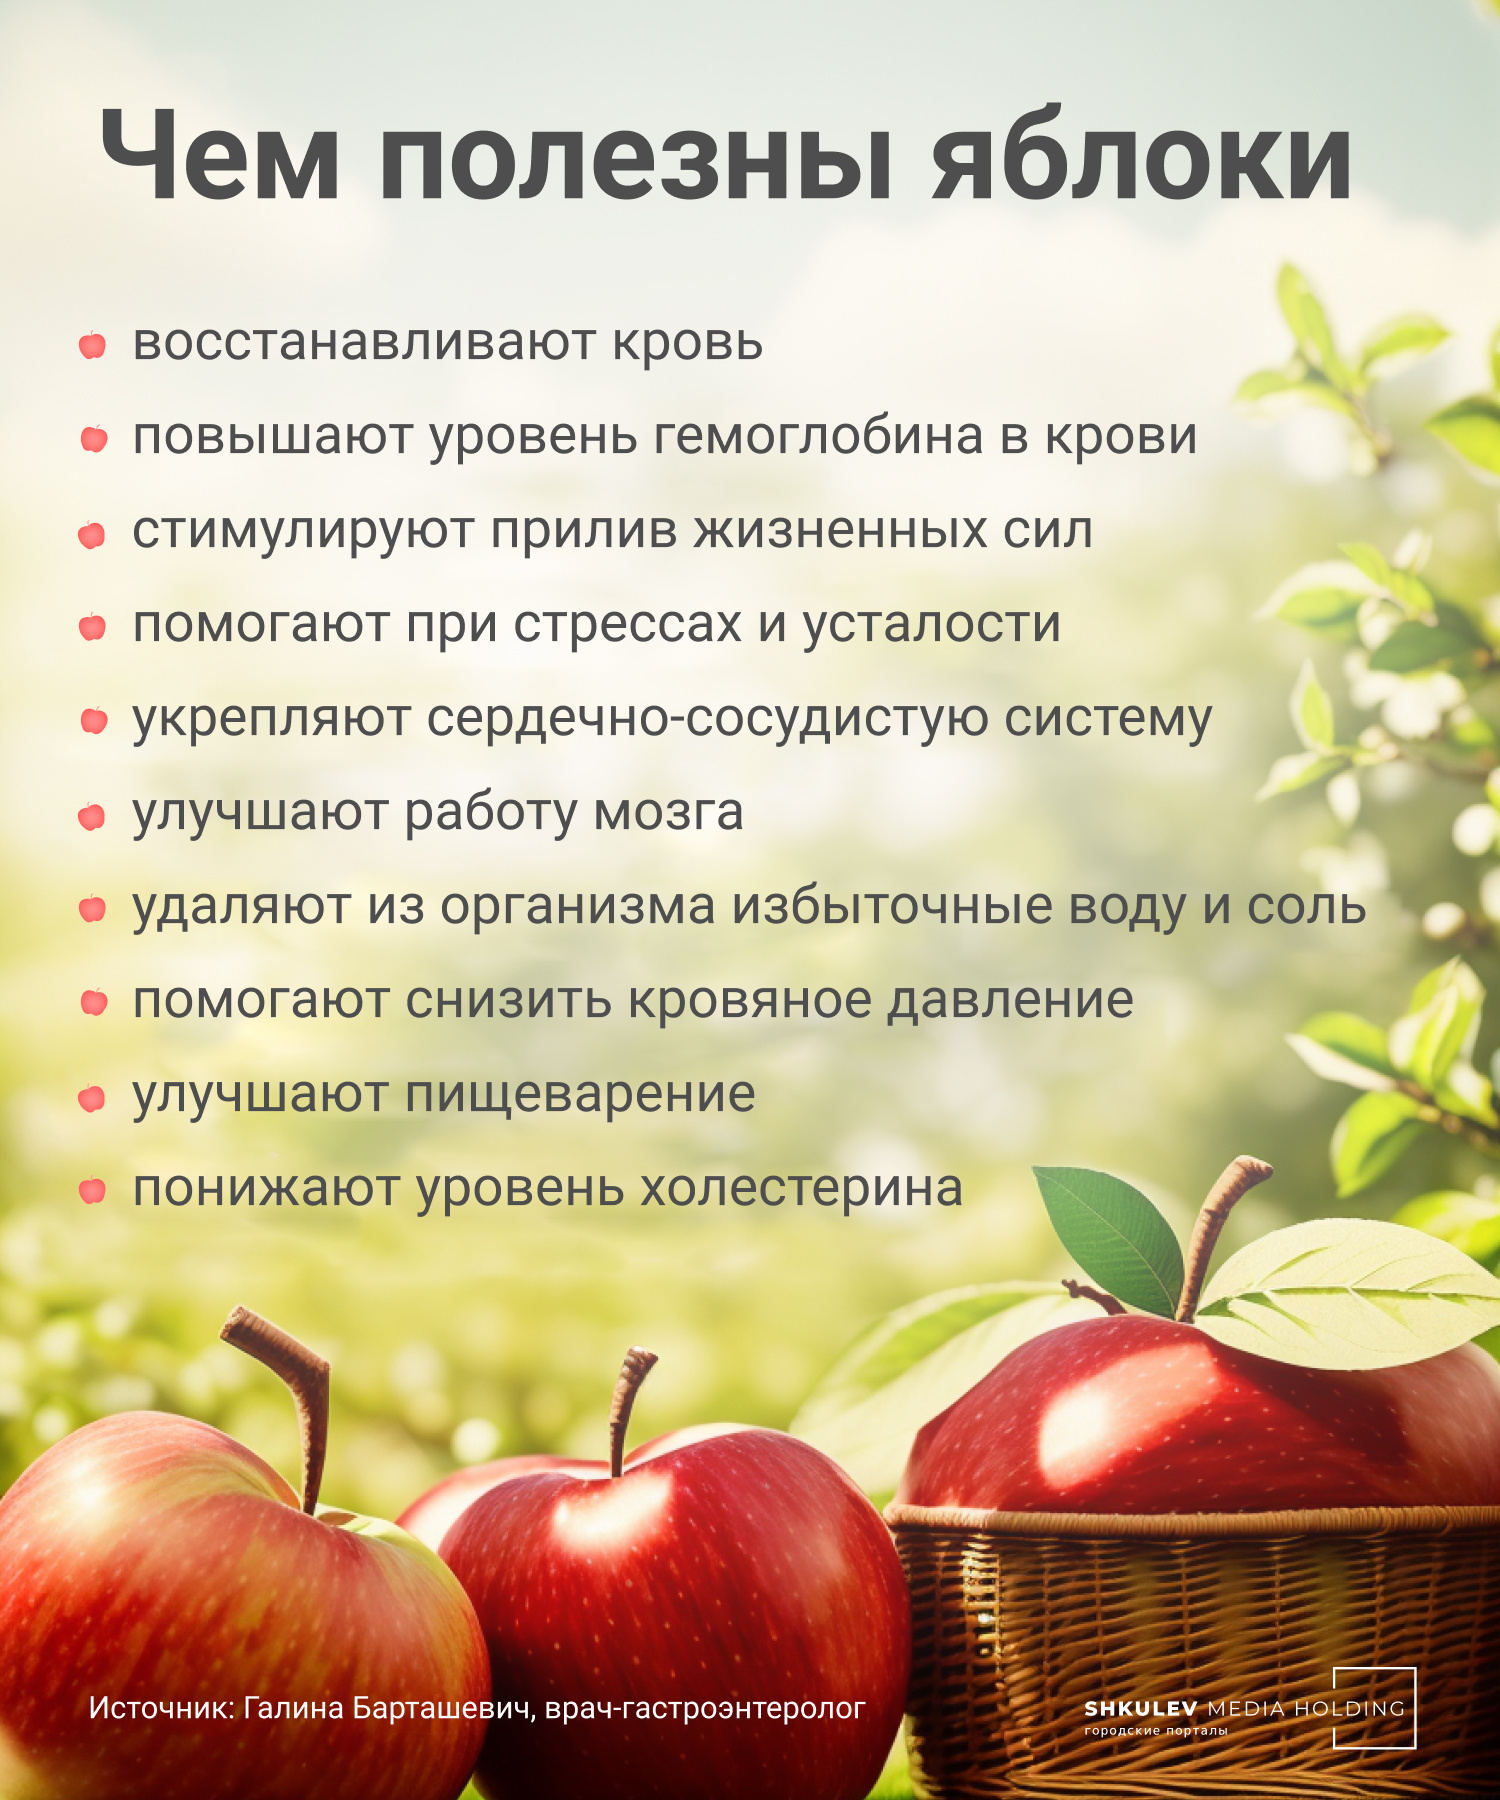 Врачи назвали 7 причин, из-за которых нельзя есть яблоки. А вас это касается? вред,диета,диетолог,еда,польза,продукты,яблоки